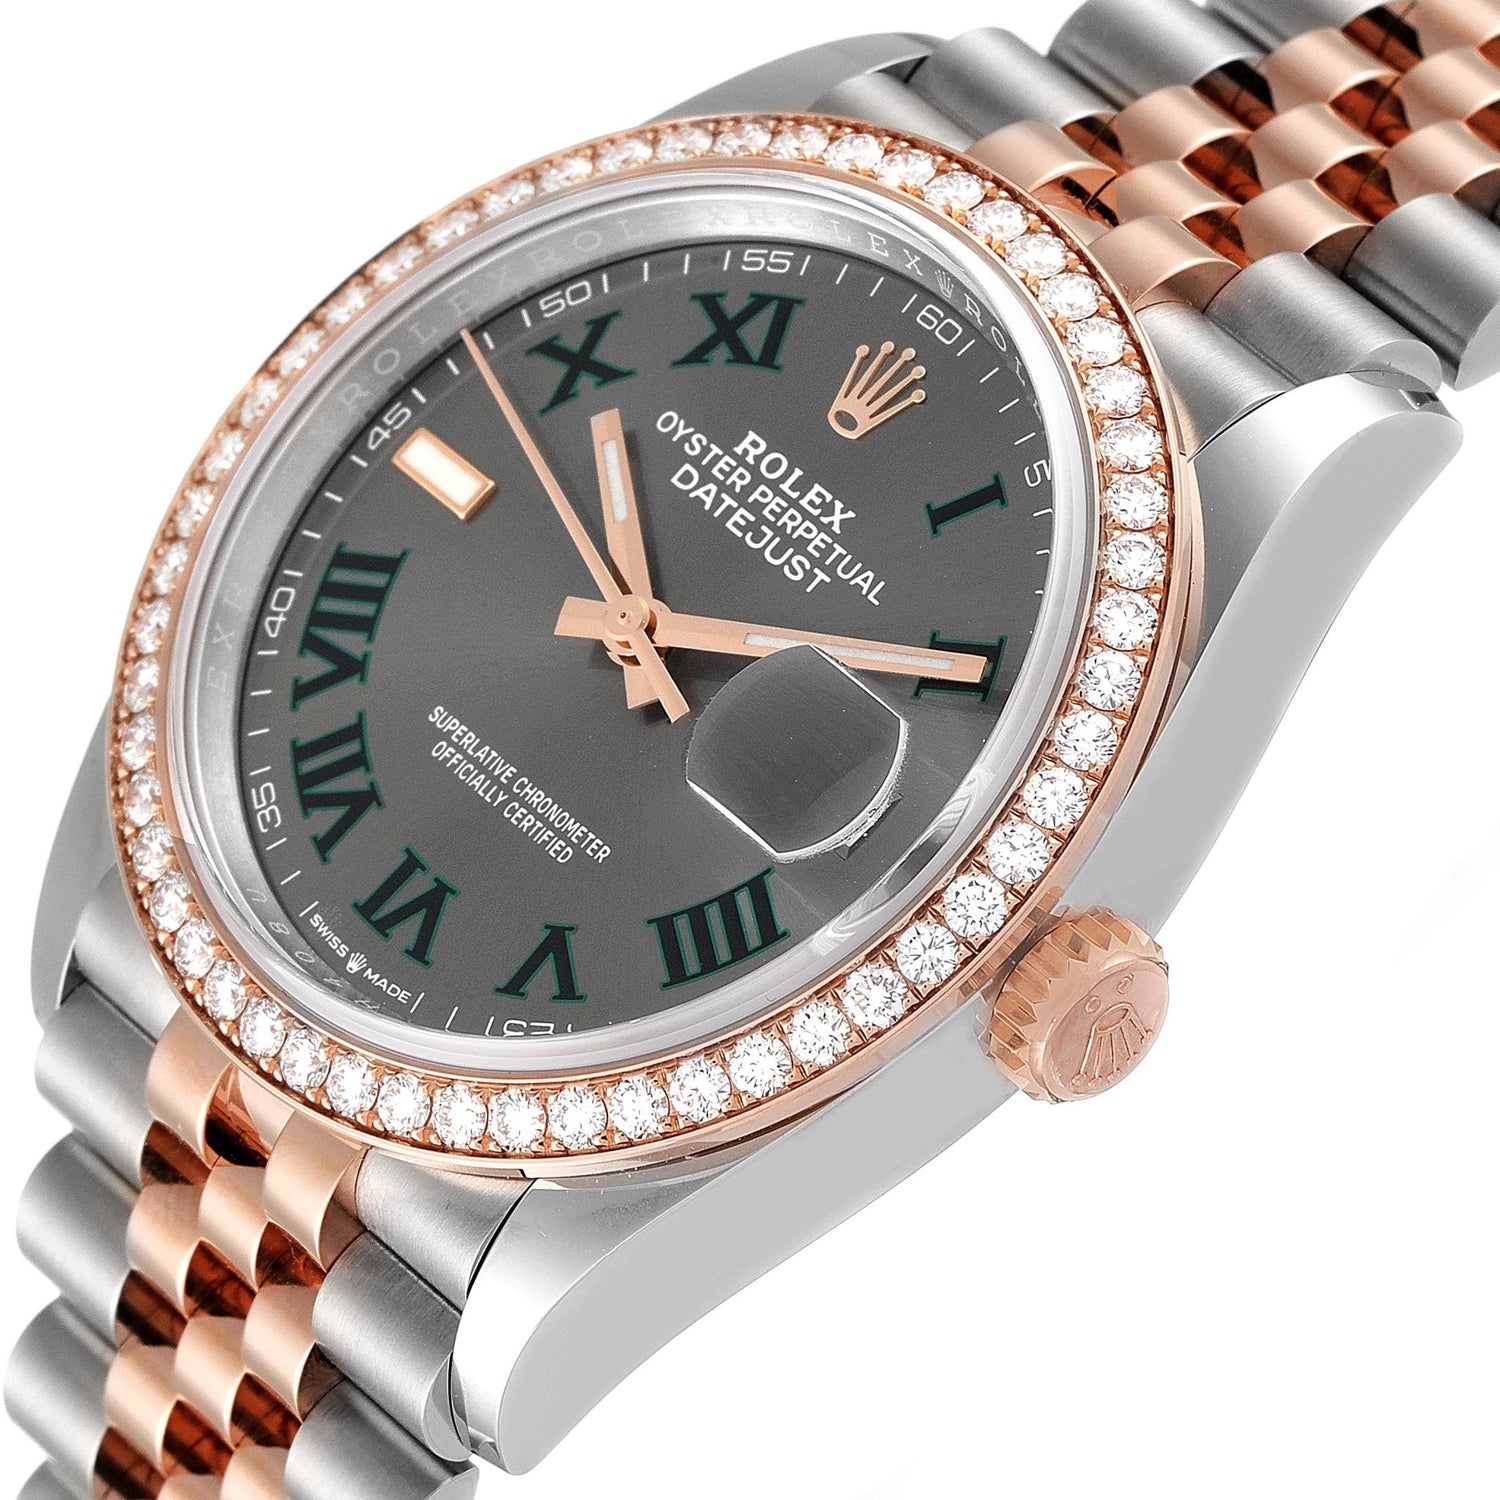 Rolex Watches Under $30000